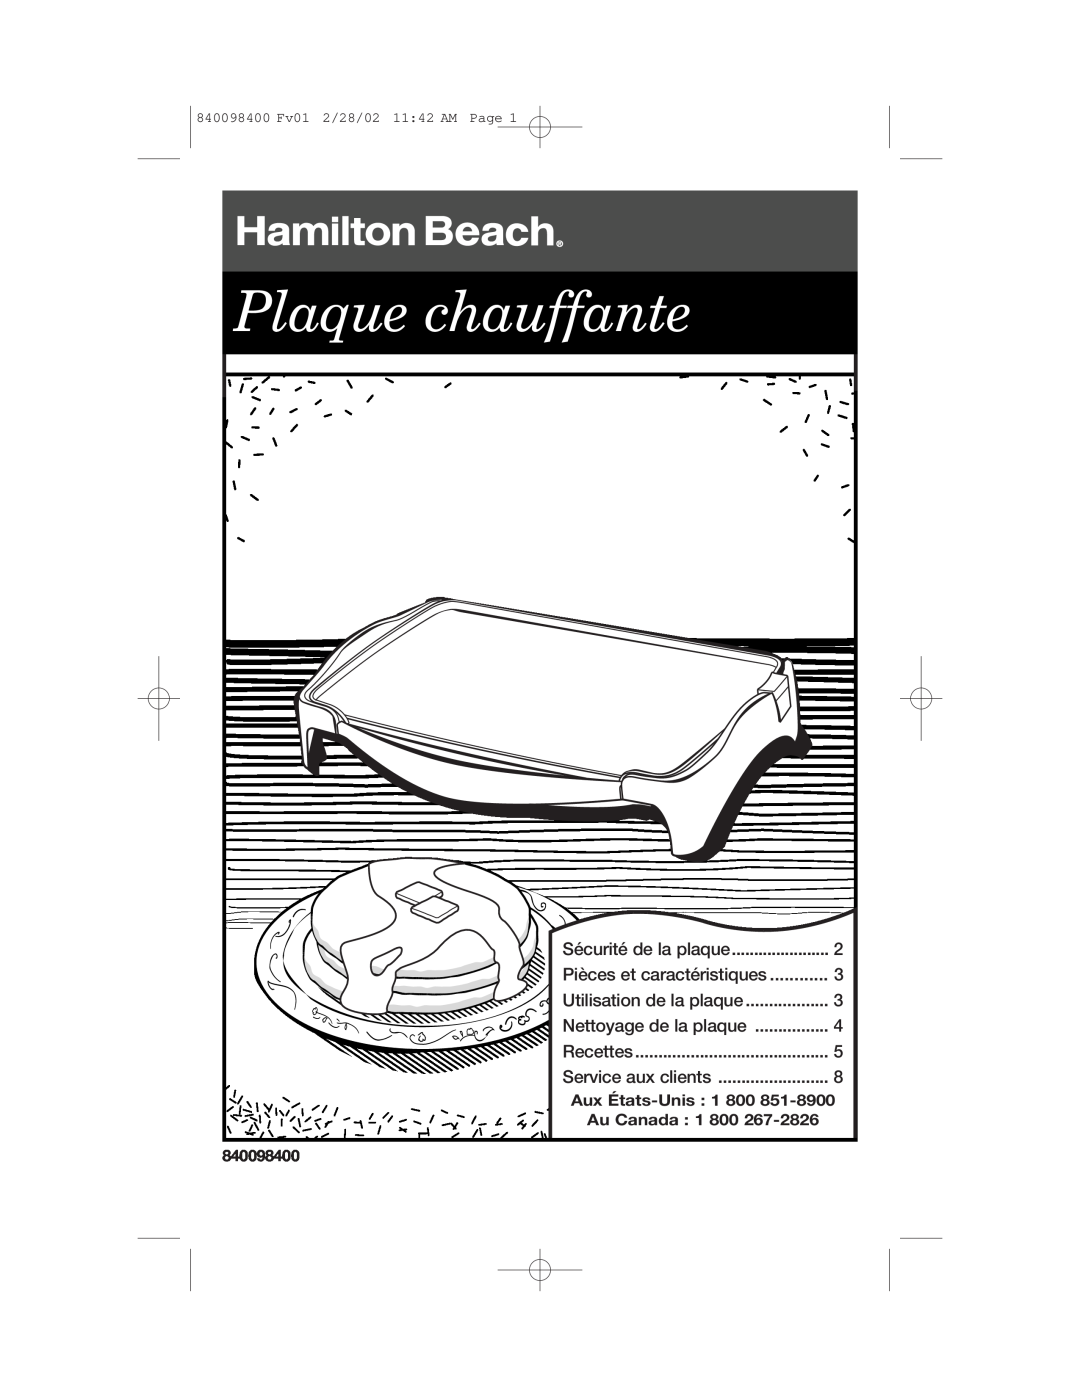 Hamilton Beach Electric Griddle manual Plaque chauffante, Aux États-Unis, Au Canada, 840098400 